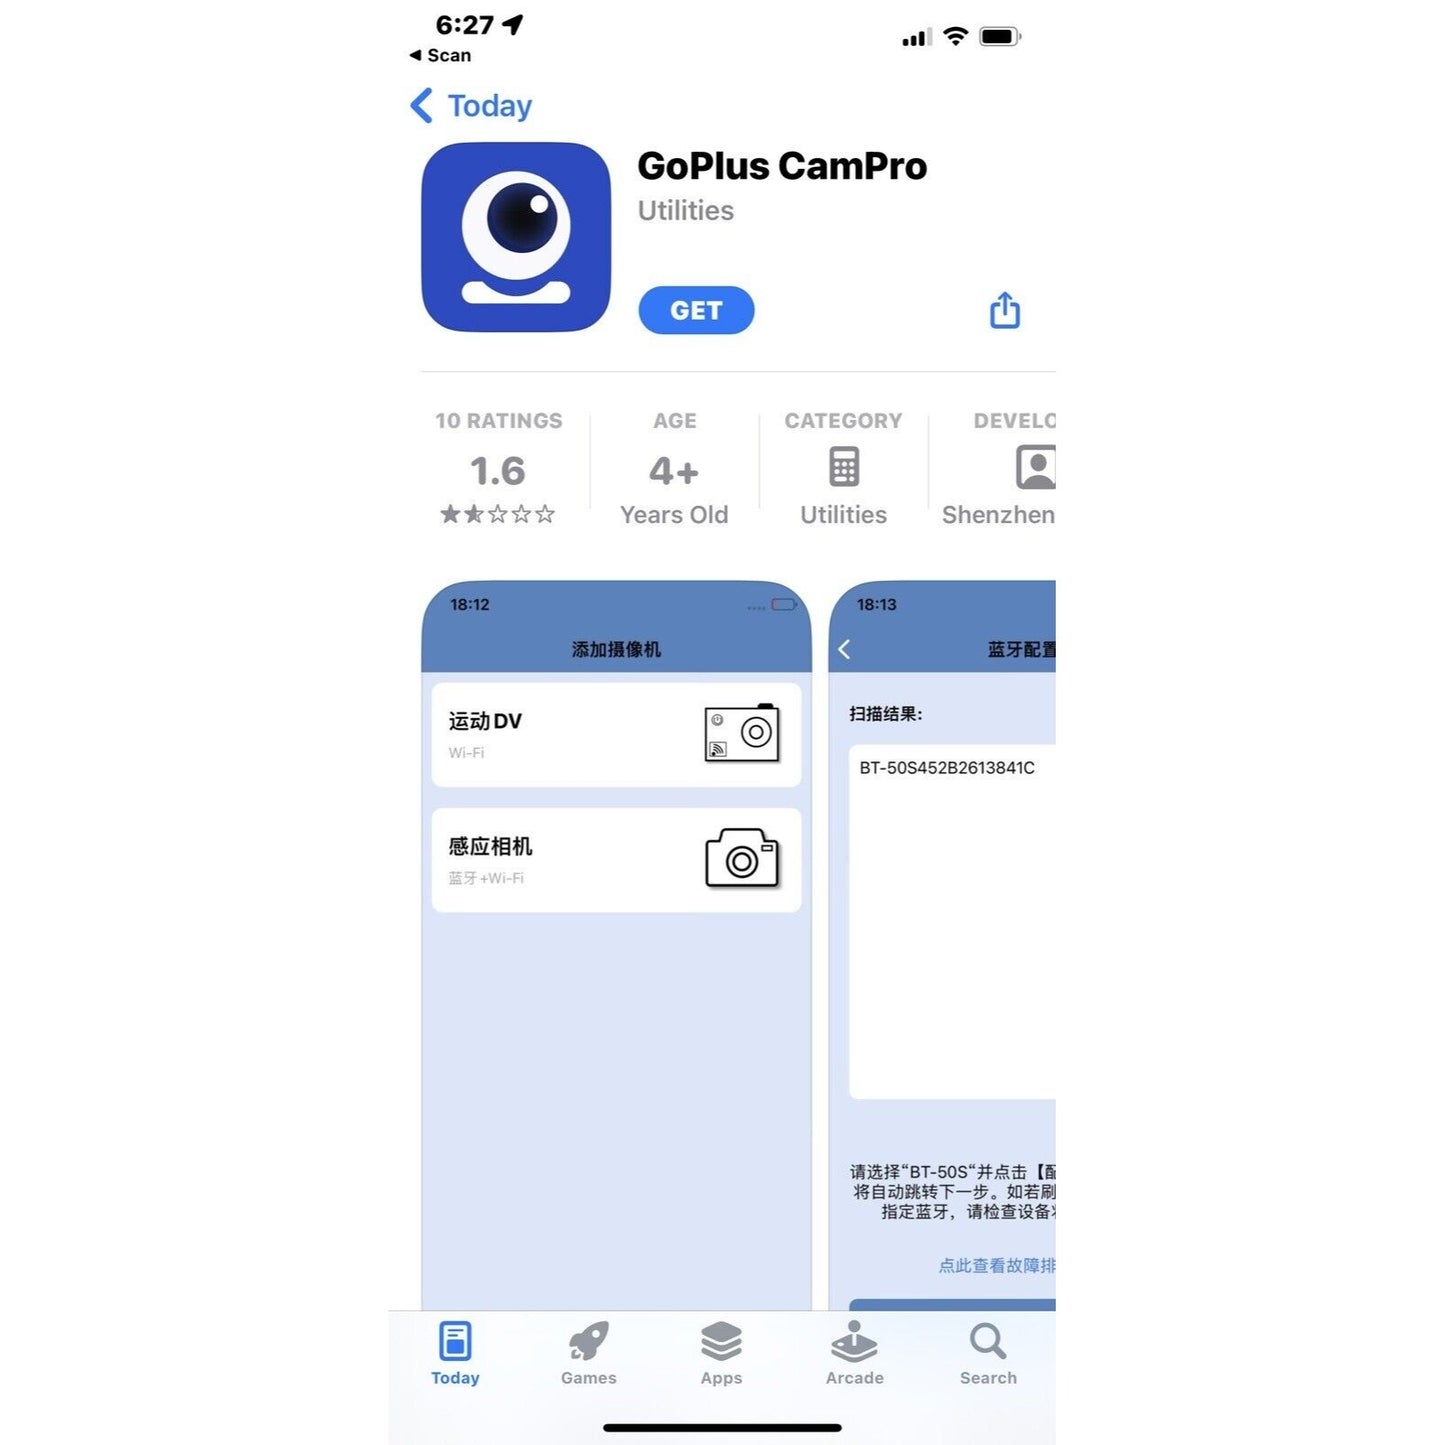 Mobile App Info